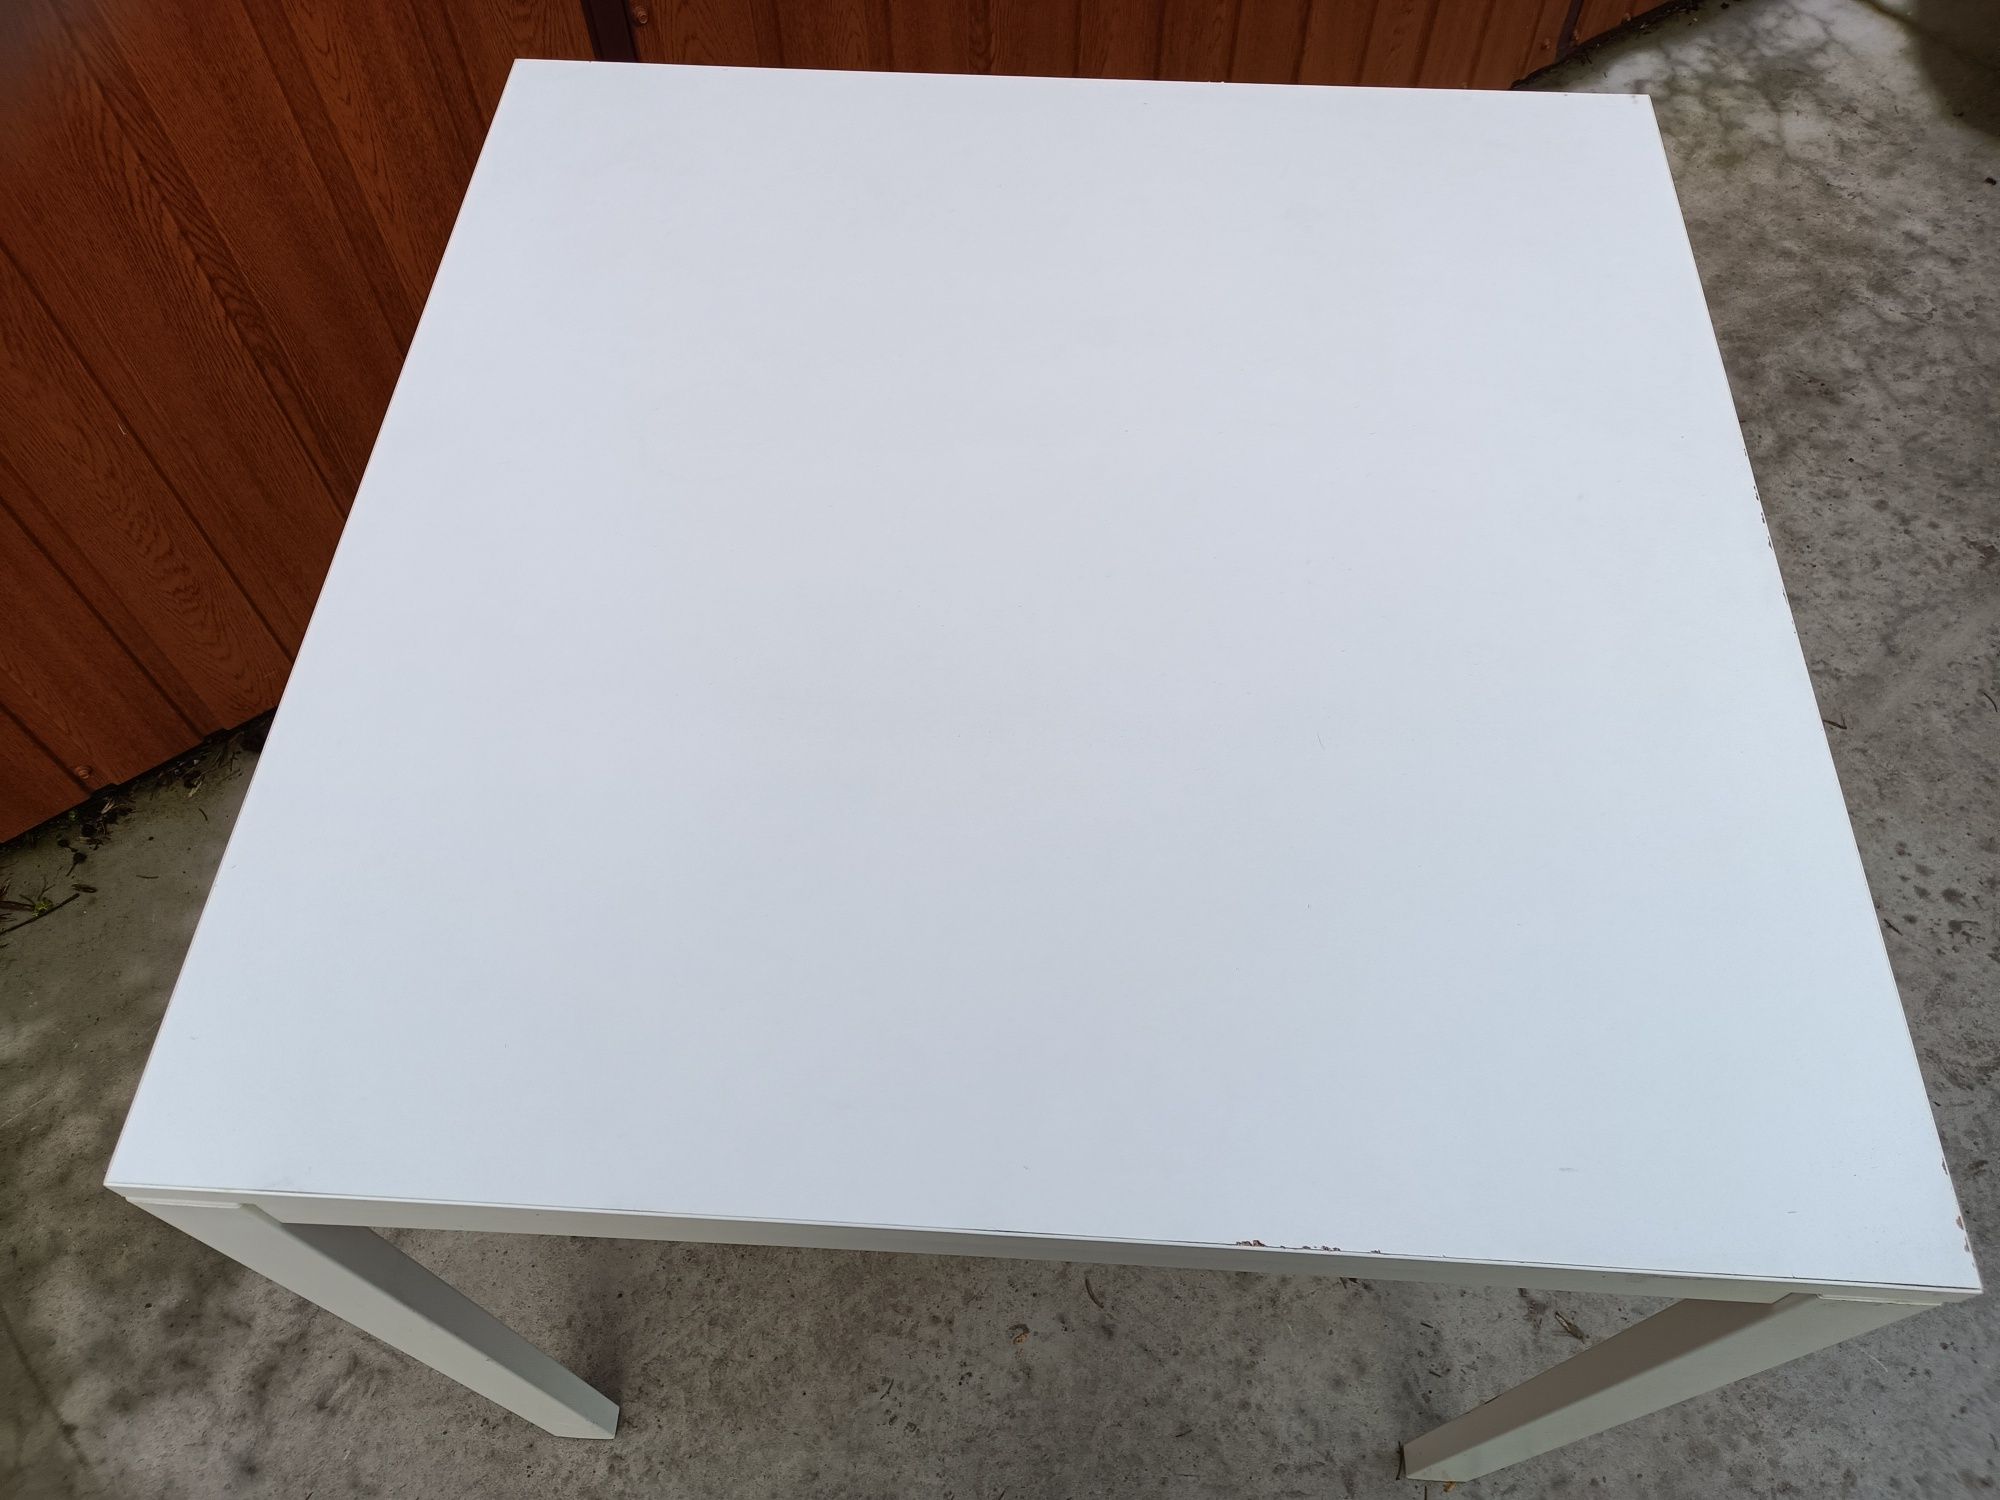 Sz-n dostawa gratis STÓŁ Ikea melltorp metalowy solidny biały  75 x 75